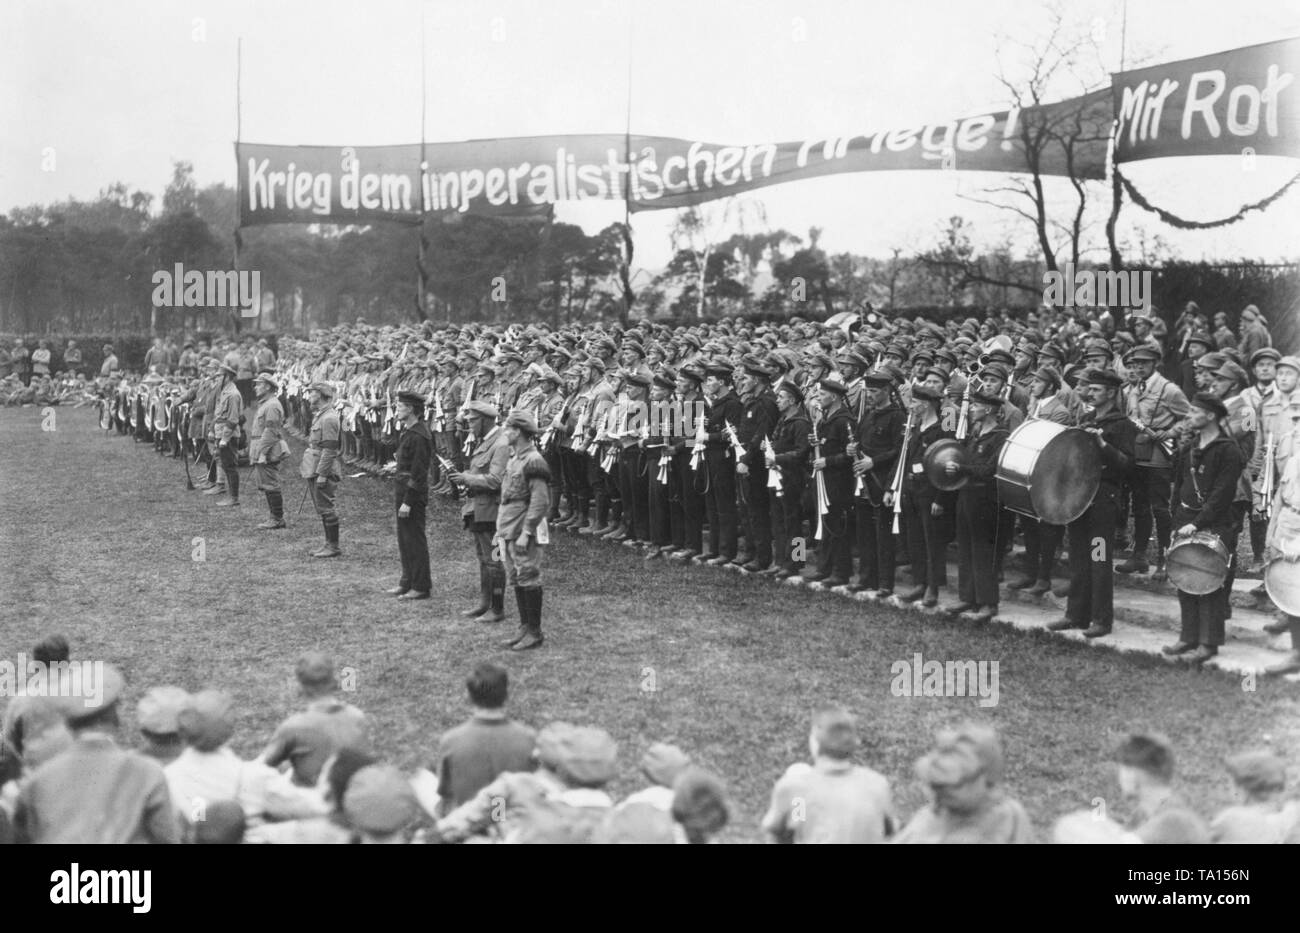 In der Sitzung des Rfb am Pfingstsonntag mehr als 25.000 rote Front Kämpfer März auf dem Tempelhofer Feld in Berlin. Hier eine Band ist unter einer Fahne mit der Aufschrift "Krieg der imperialistischen Kriege gebildet!" Stockfoto